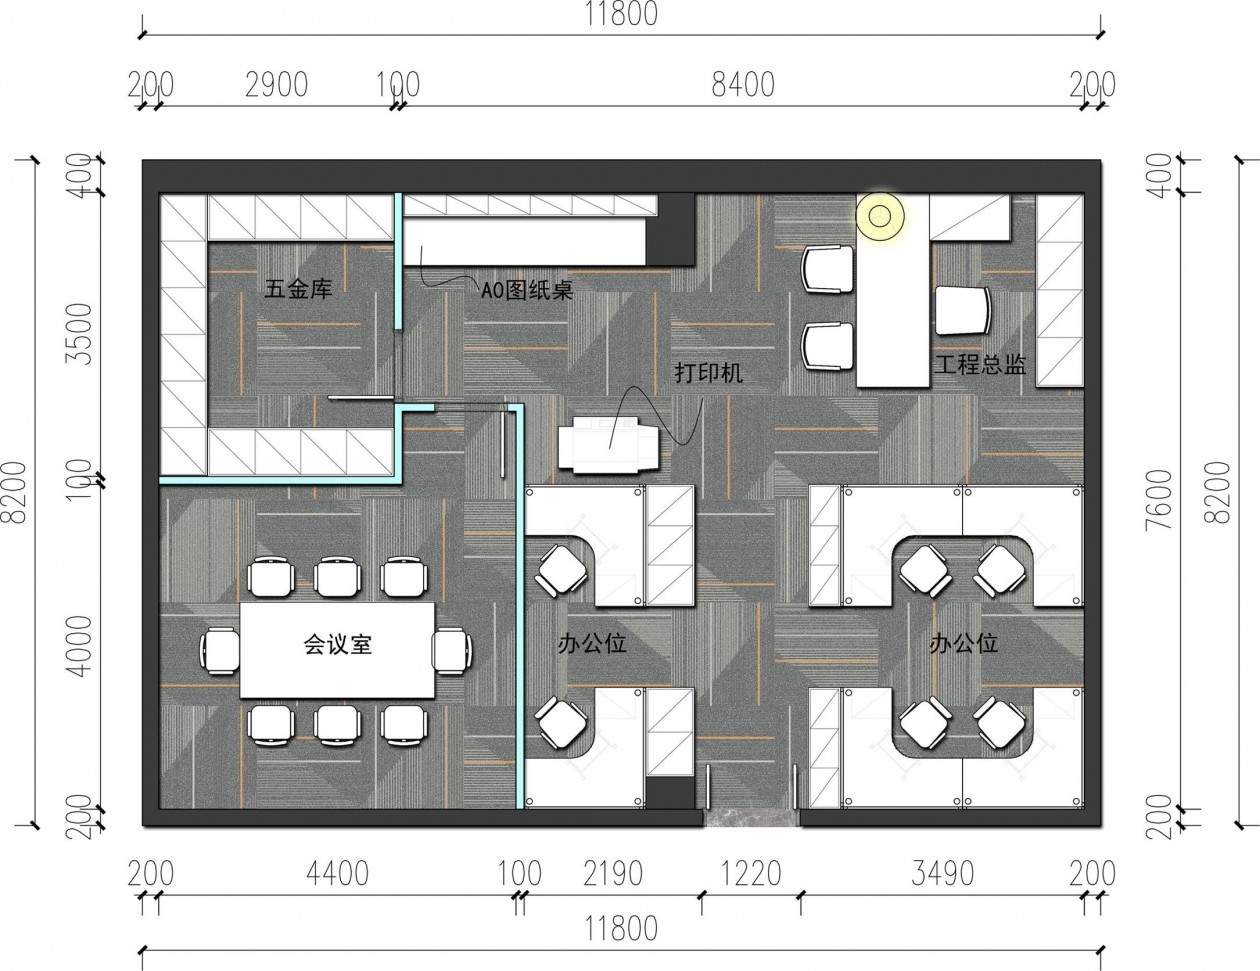 158中式办公空间装修效果图,宝声音响公司装修案例效果图-美广网(图1)